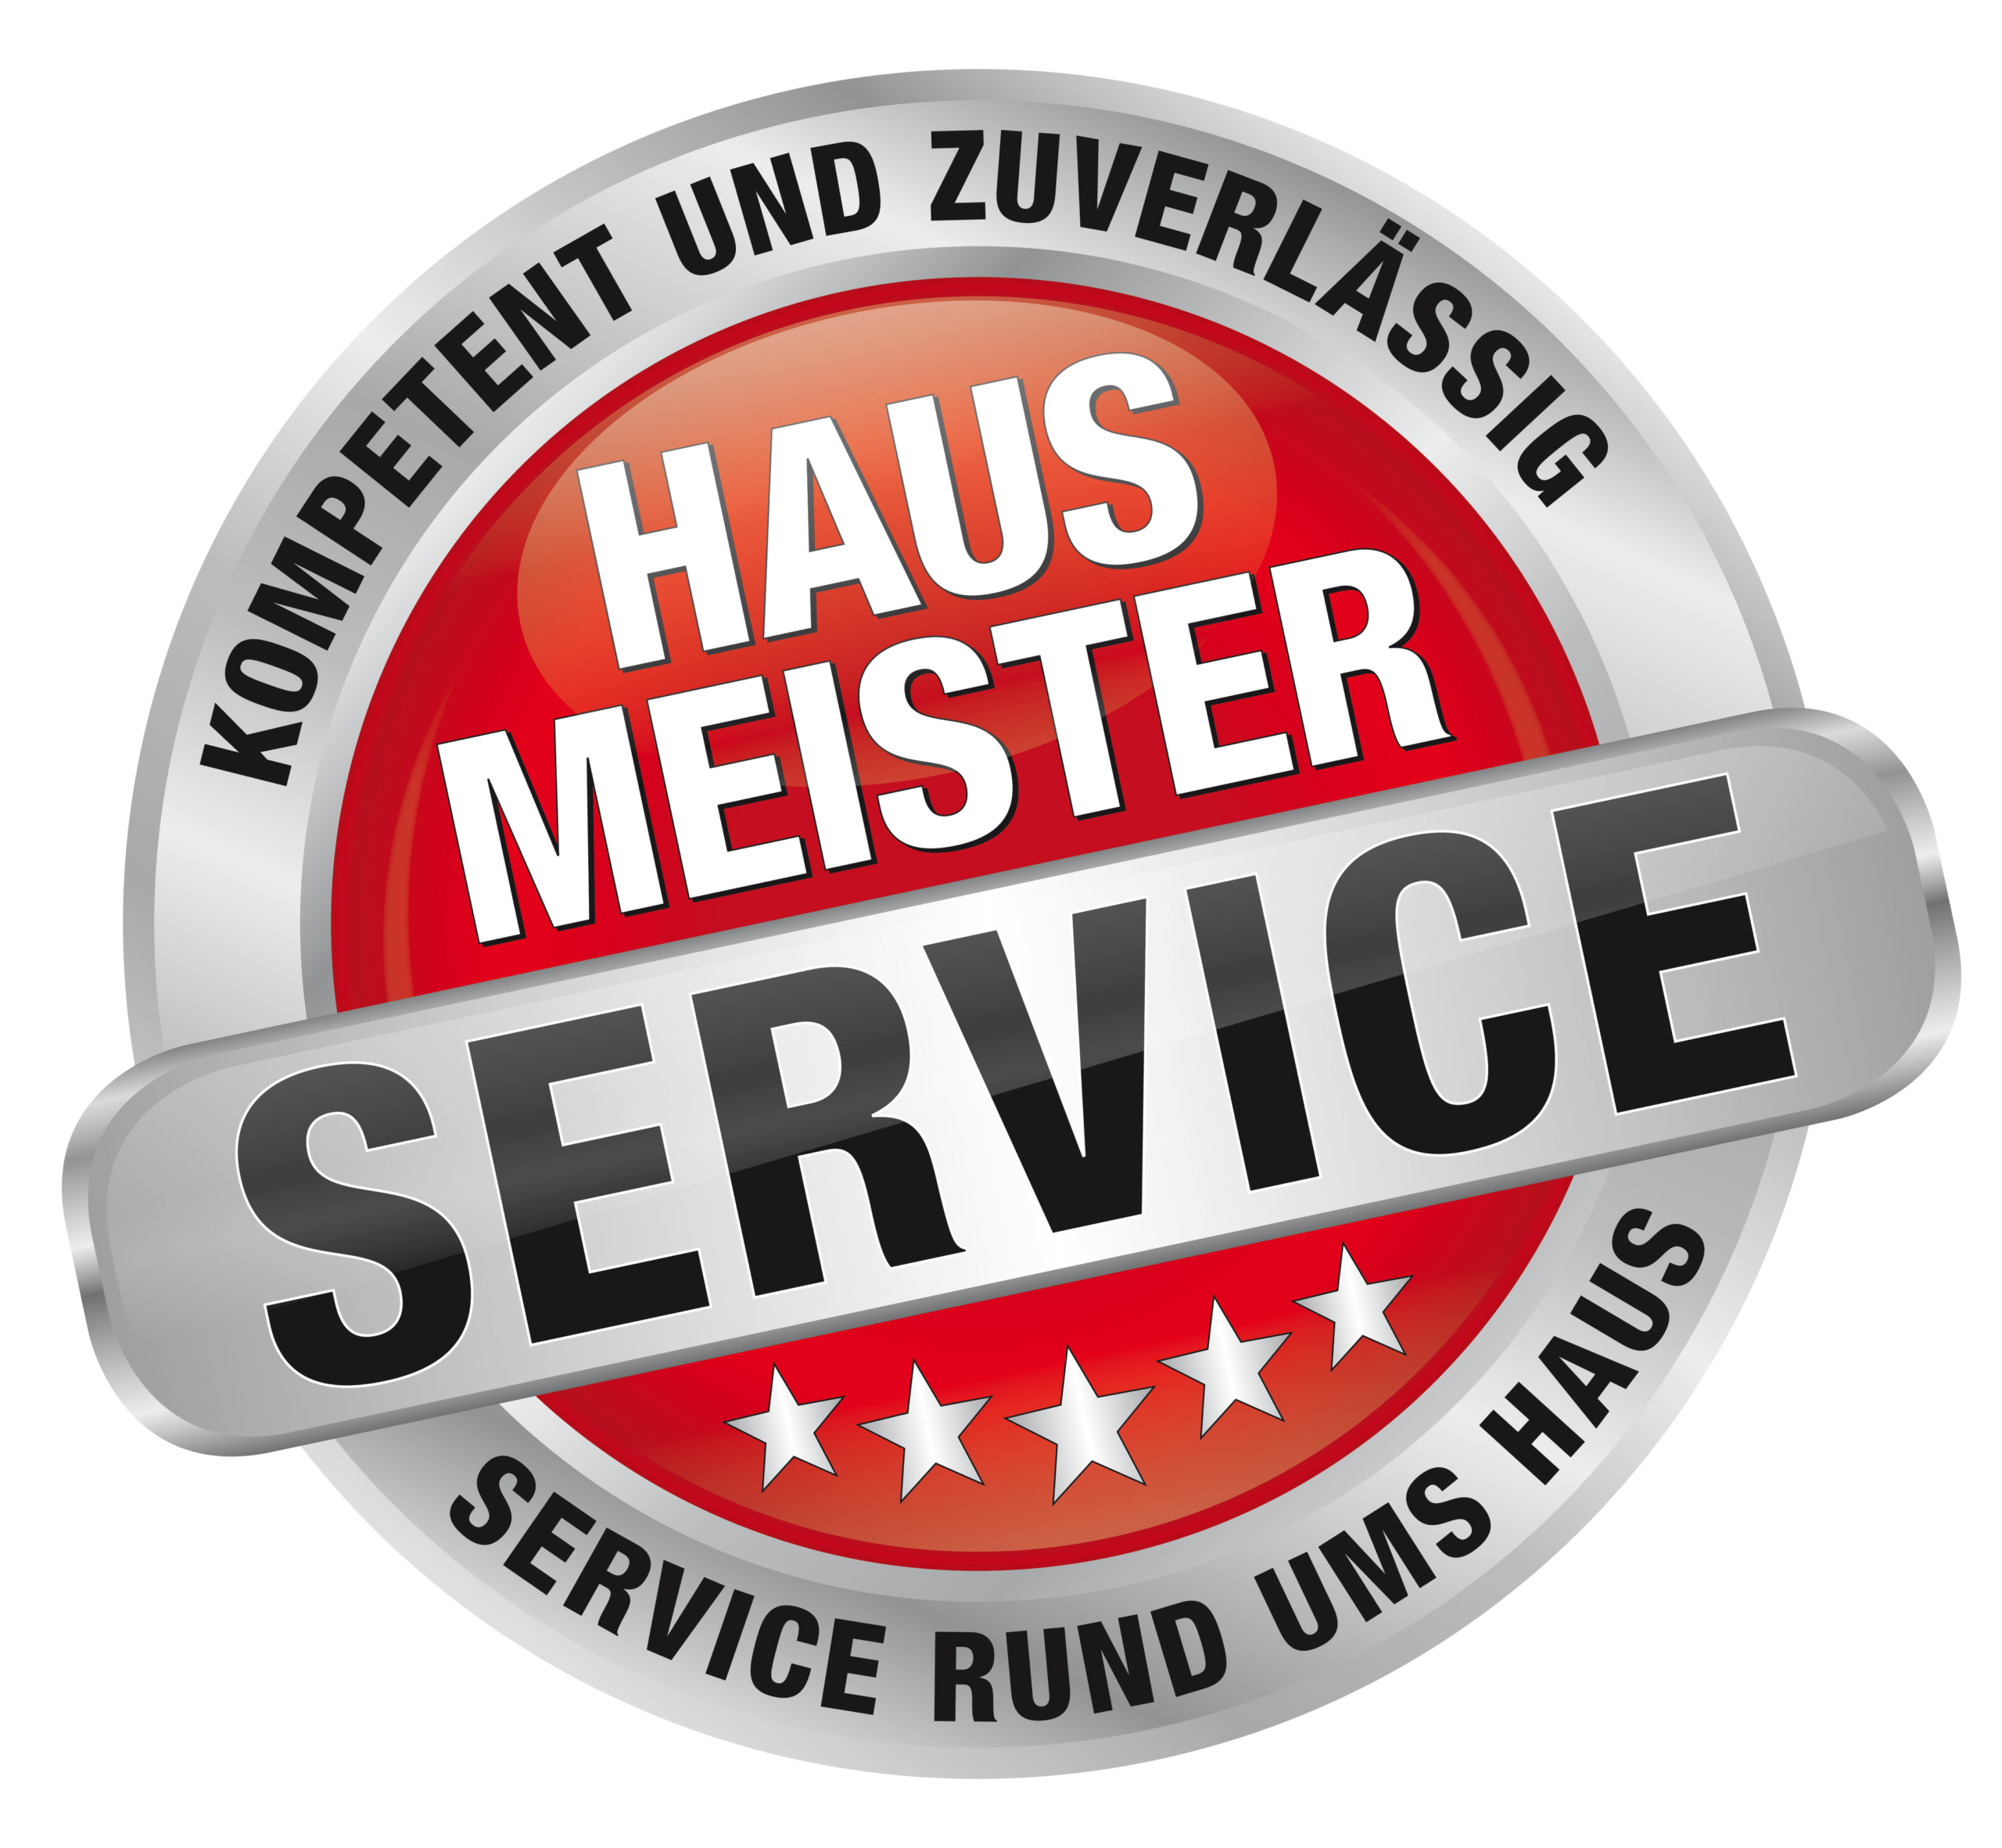 Hausmeisterservice Heidelberg, Heidelberg Hausmeisterservice, Hausmeister Heidelberg, Heidelberg Hausmeister